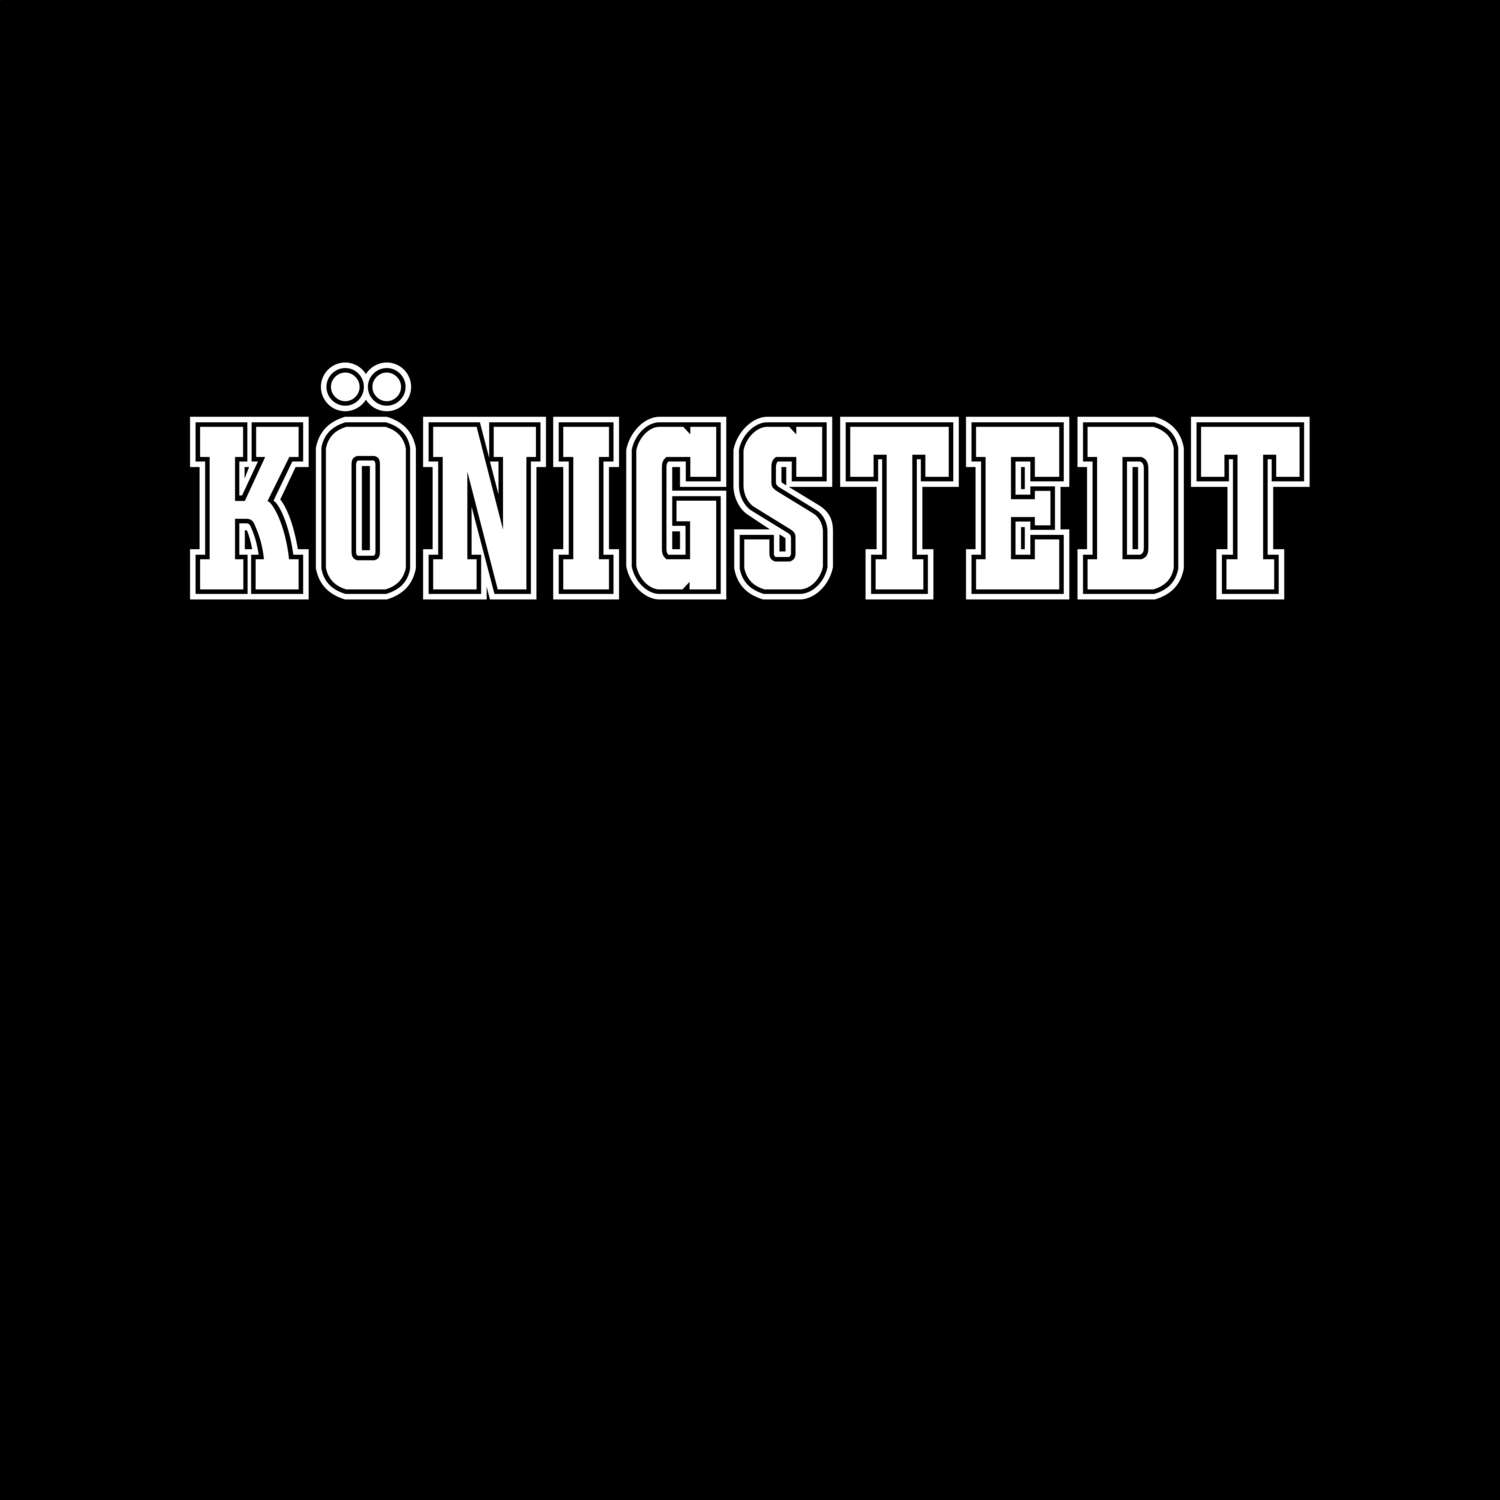 Königstedt T-Shirt »Classic«